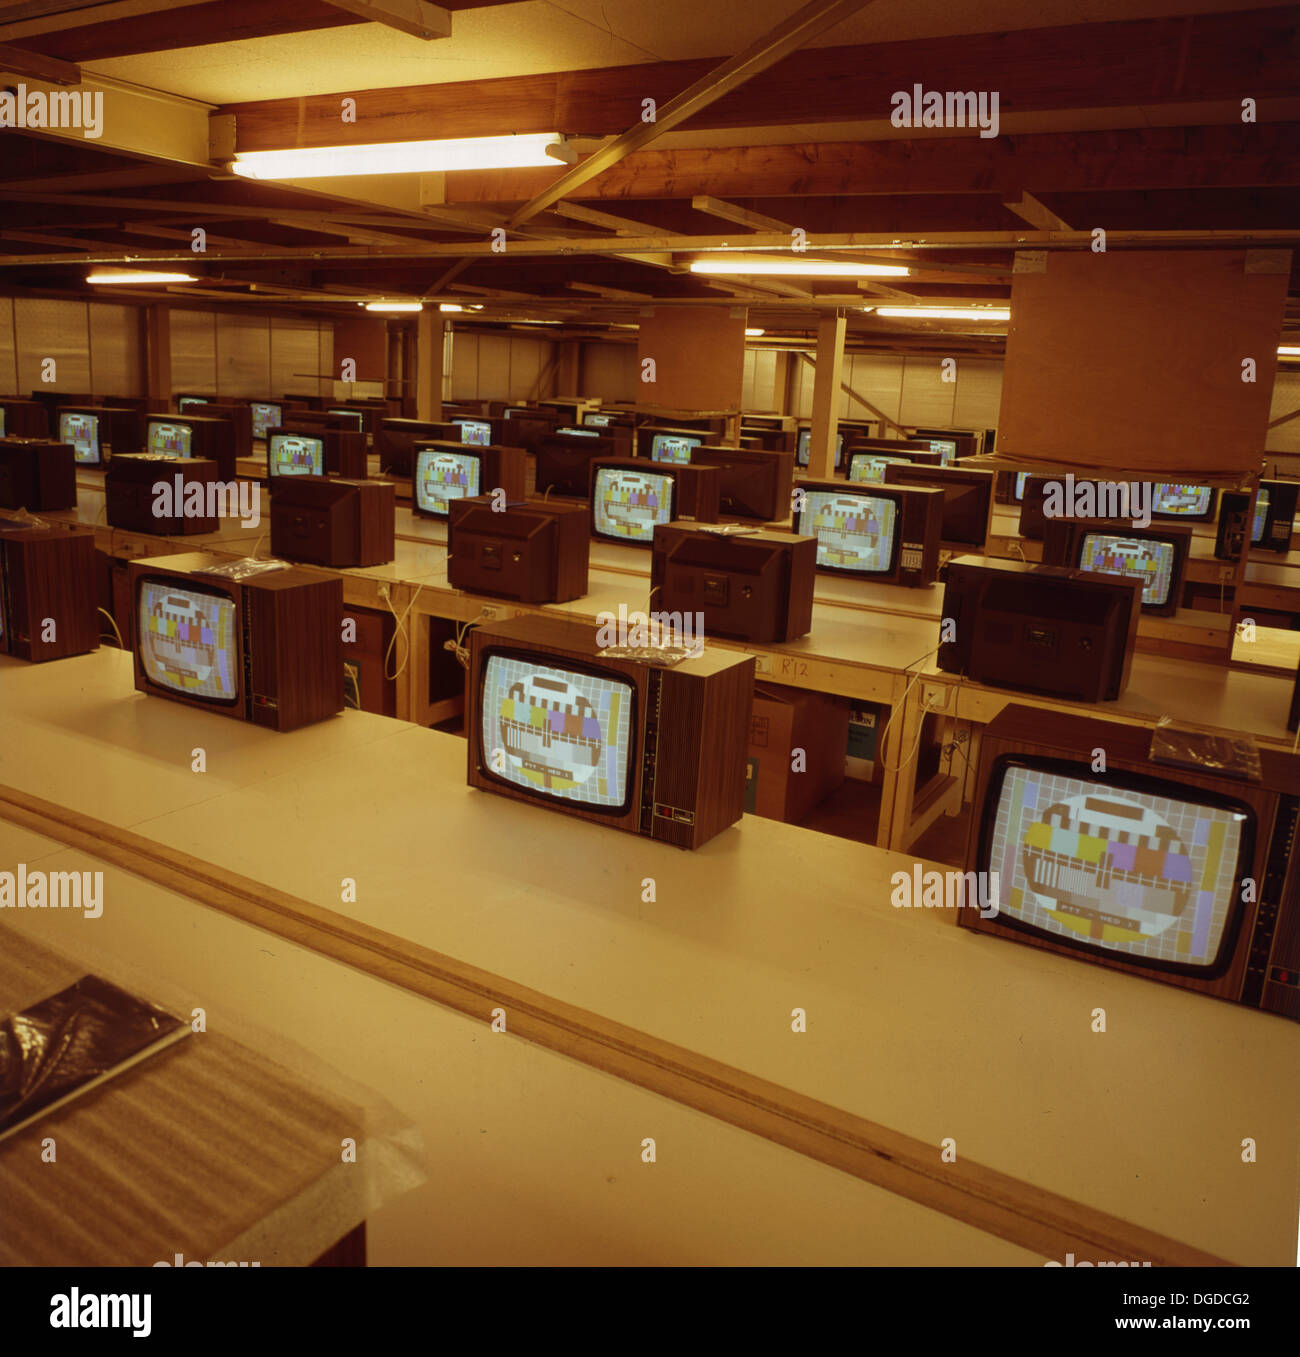 1960er Jahre, Fernseher der Ära, die auf Schreibtischen sitzen und getestet werden, alle zeigen das PM5544:Common PAL Testmuster. Das Testmuster oder die Testkarte wurde angezeigt, als keine Programme gesendet wurden. Stockfoto